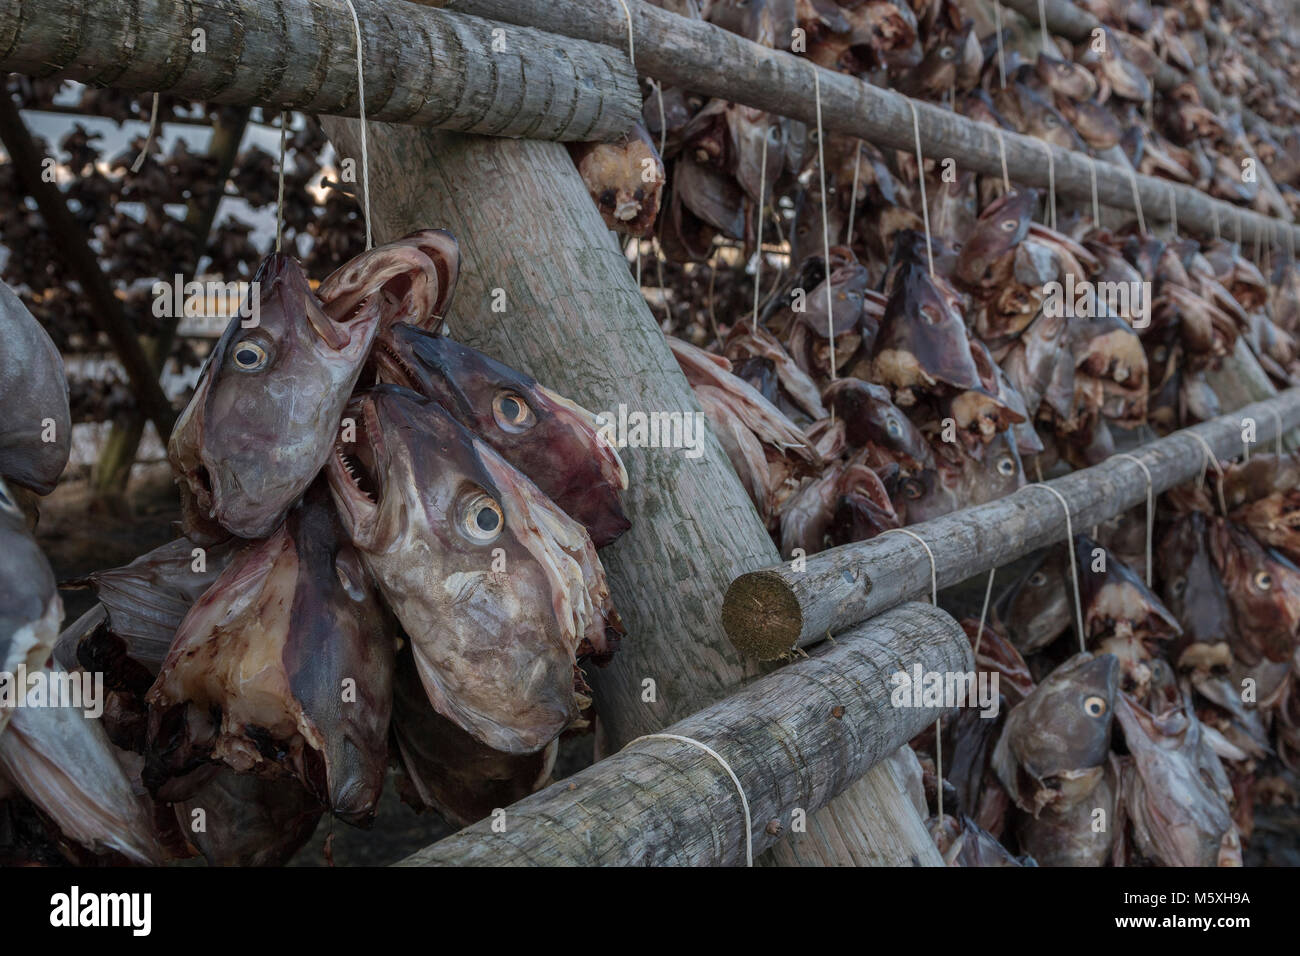 Stockfish imagem de stock. Imagem de escandinavo, pesca - 29769101